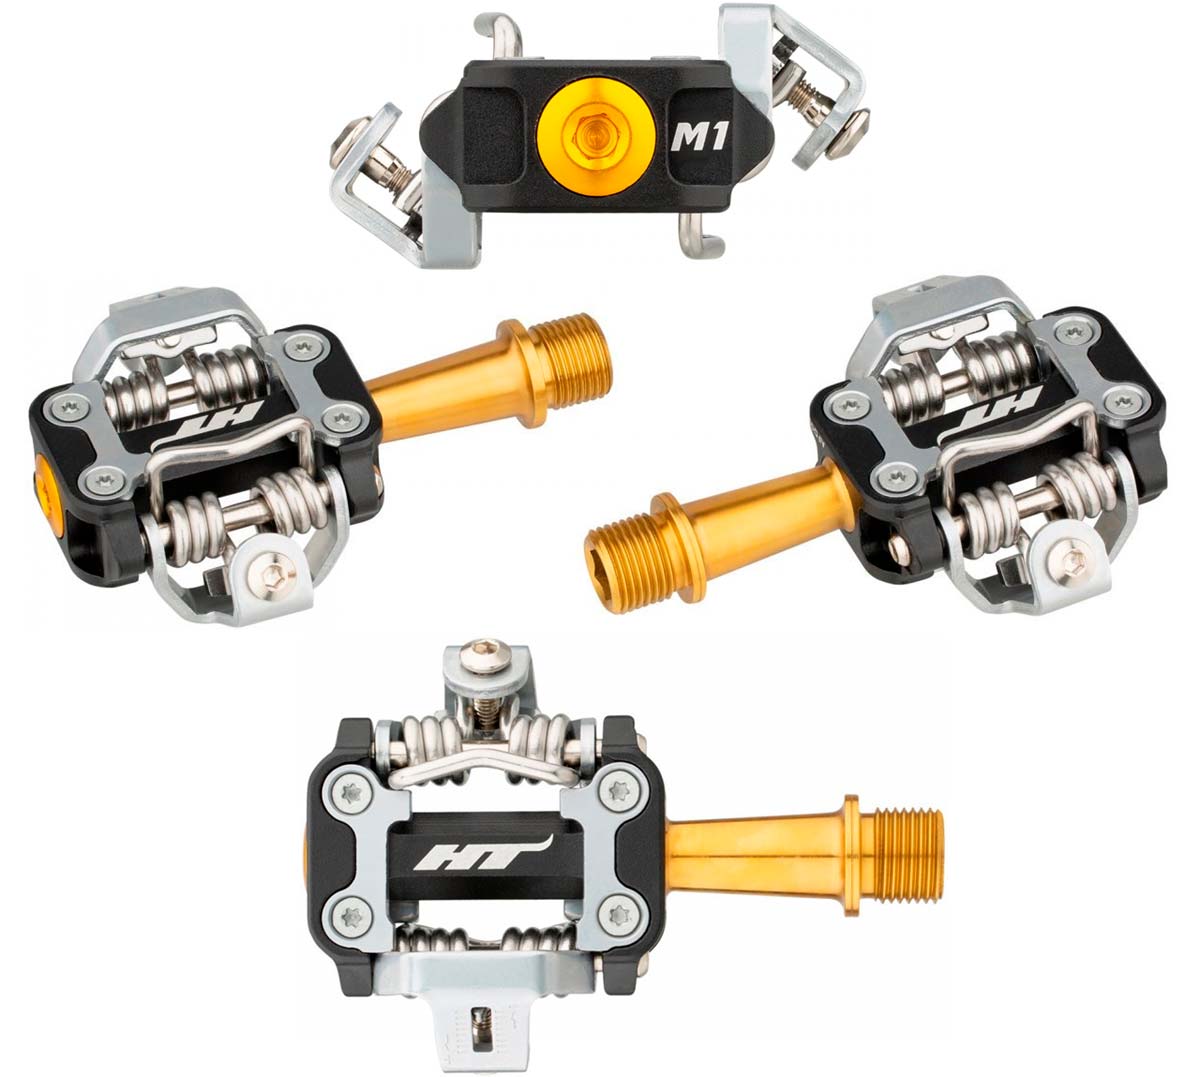 En TodoMountainBike: HT M1T y M1, características y precio de los nuevos pedales automáticos de Nino Schurter